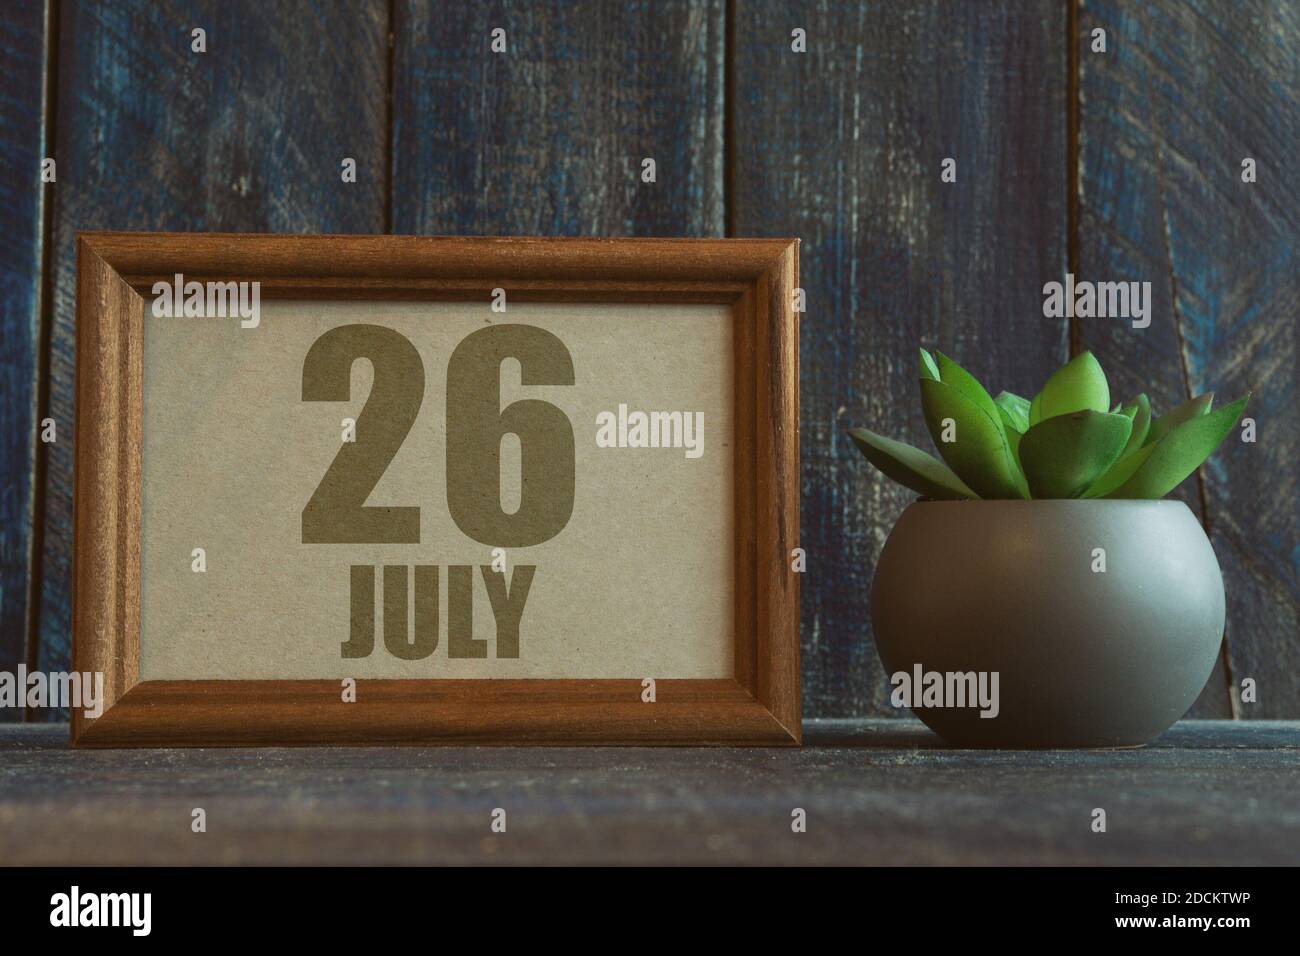 juli. Tag 26 des Monats, Datum im Rahmen neben Sukkulenten auf hölzernen Hintergrund Sommermonat, Tag des Jahres Konzept. Stockfoto